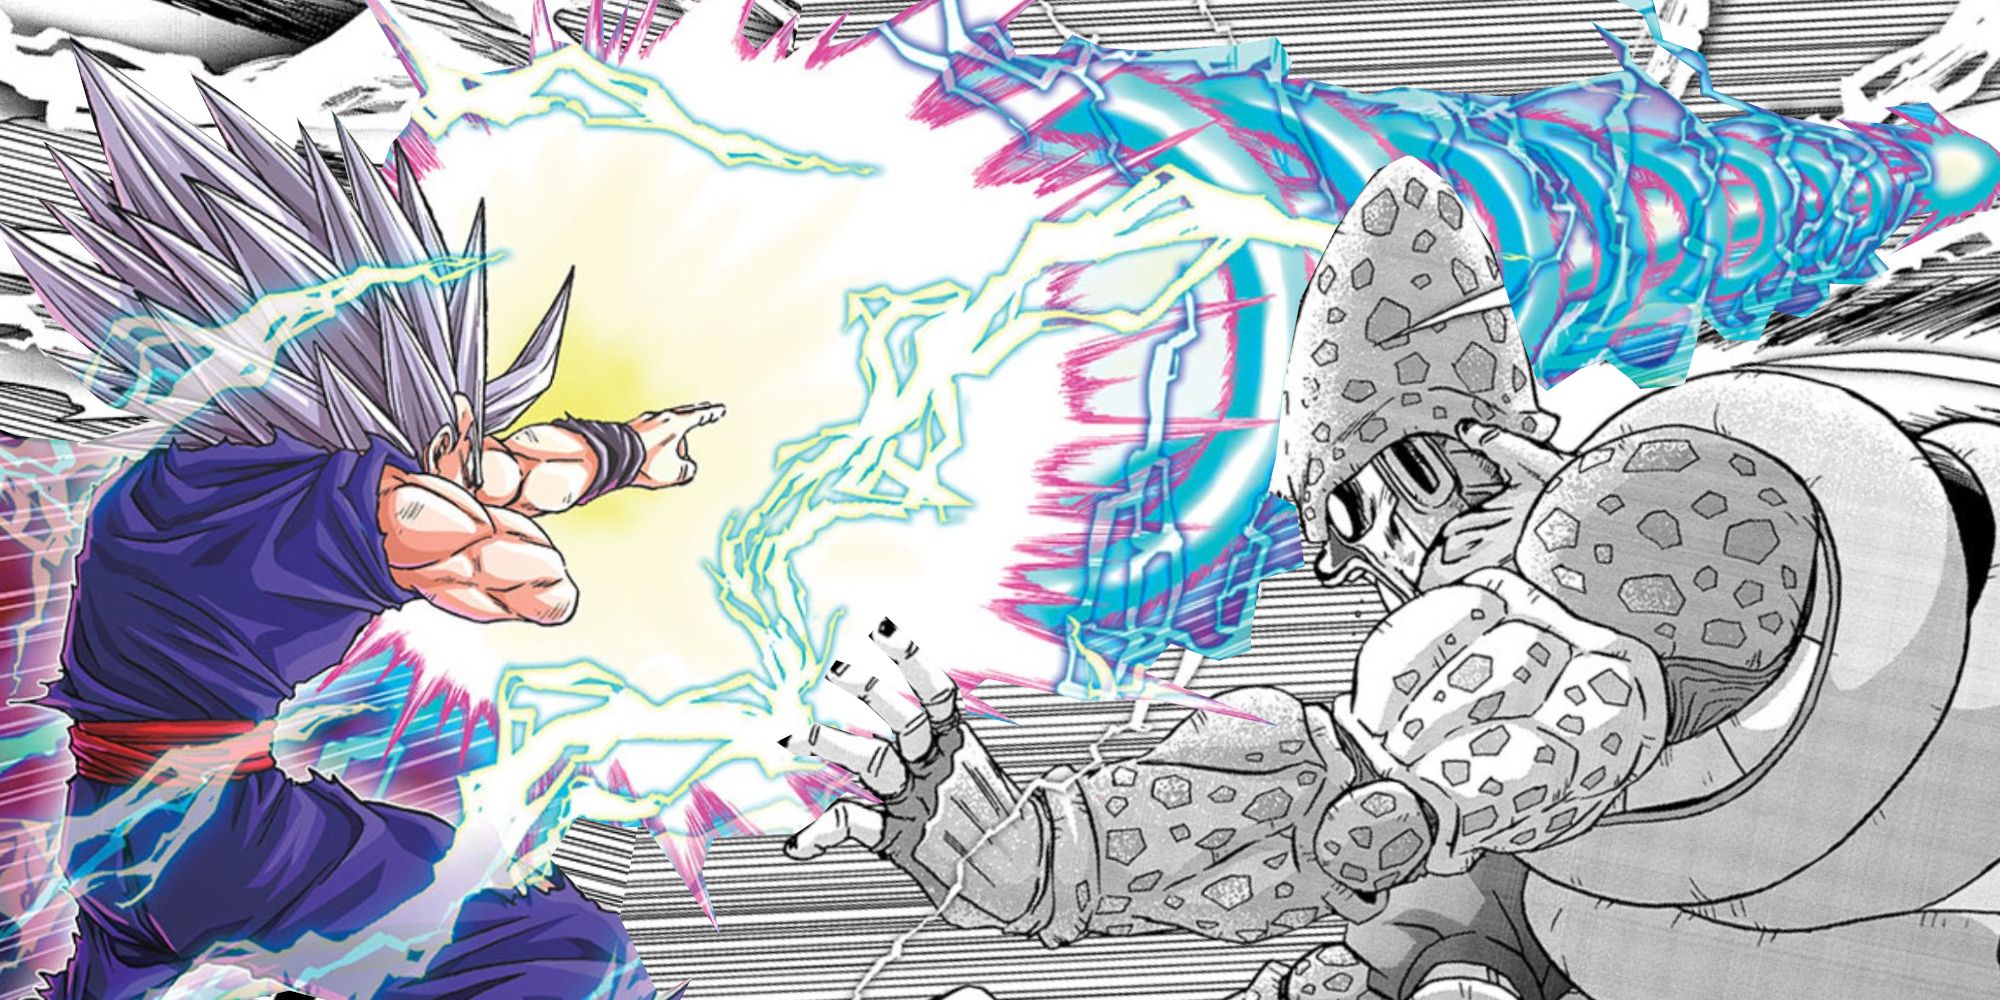 "No es el frijol Senzu que era la película" - Reseña del manga del superhéroe de Dragon Ball Super